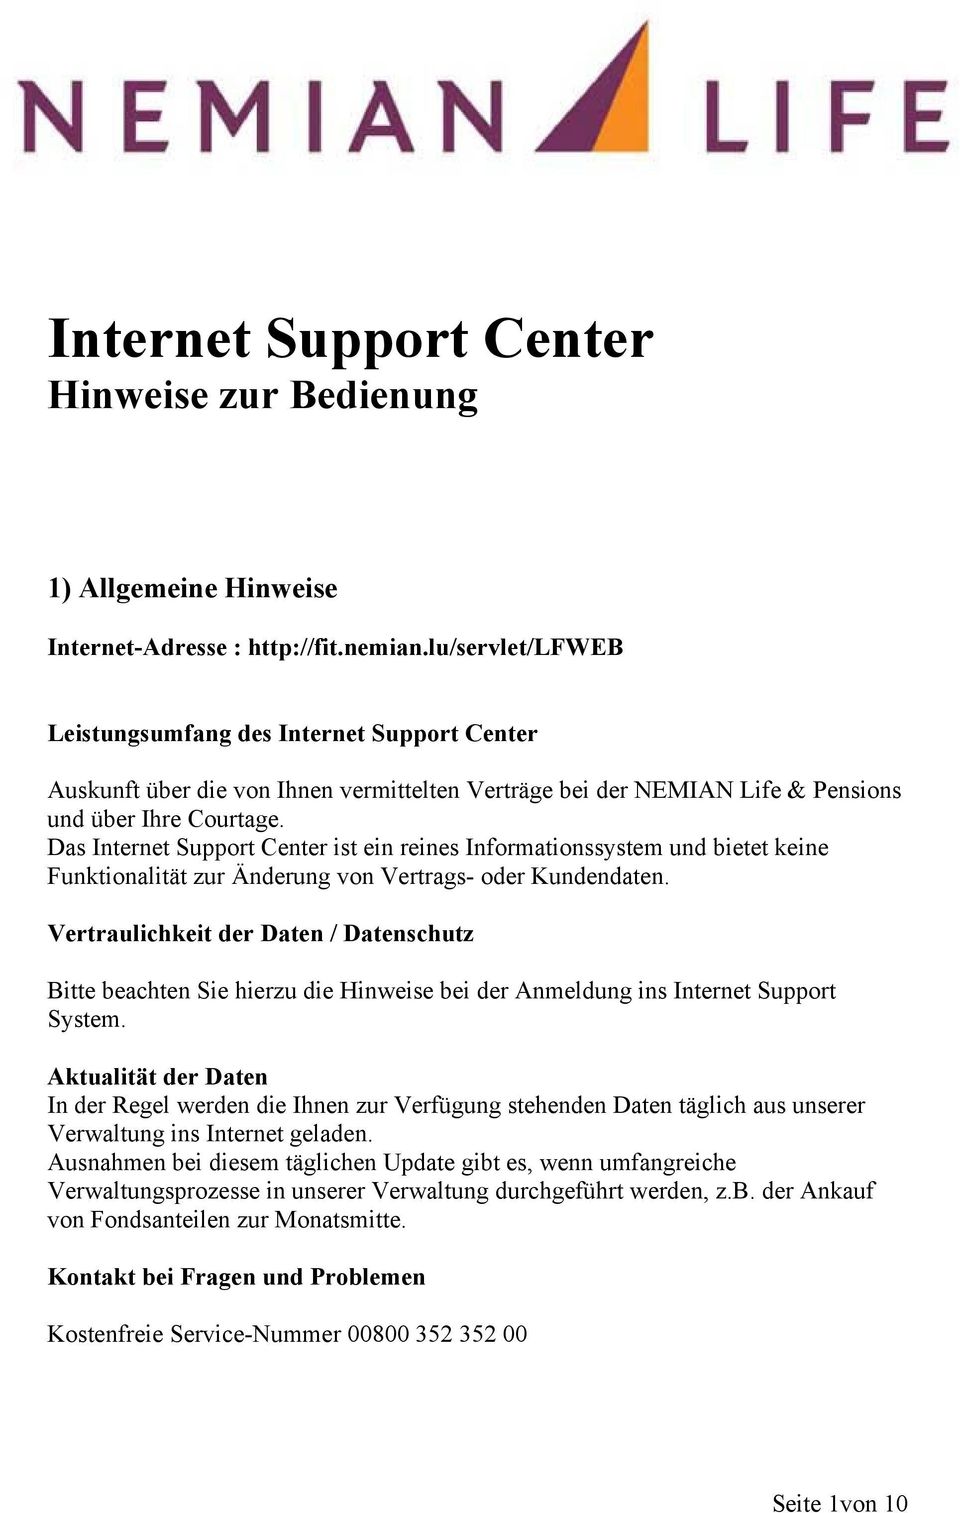 Das Internet Support Center ist ein reines Informationssystem und bietet keine Funktionalität zur Änderung von Vertrags- oder Kundendaten.